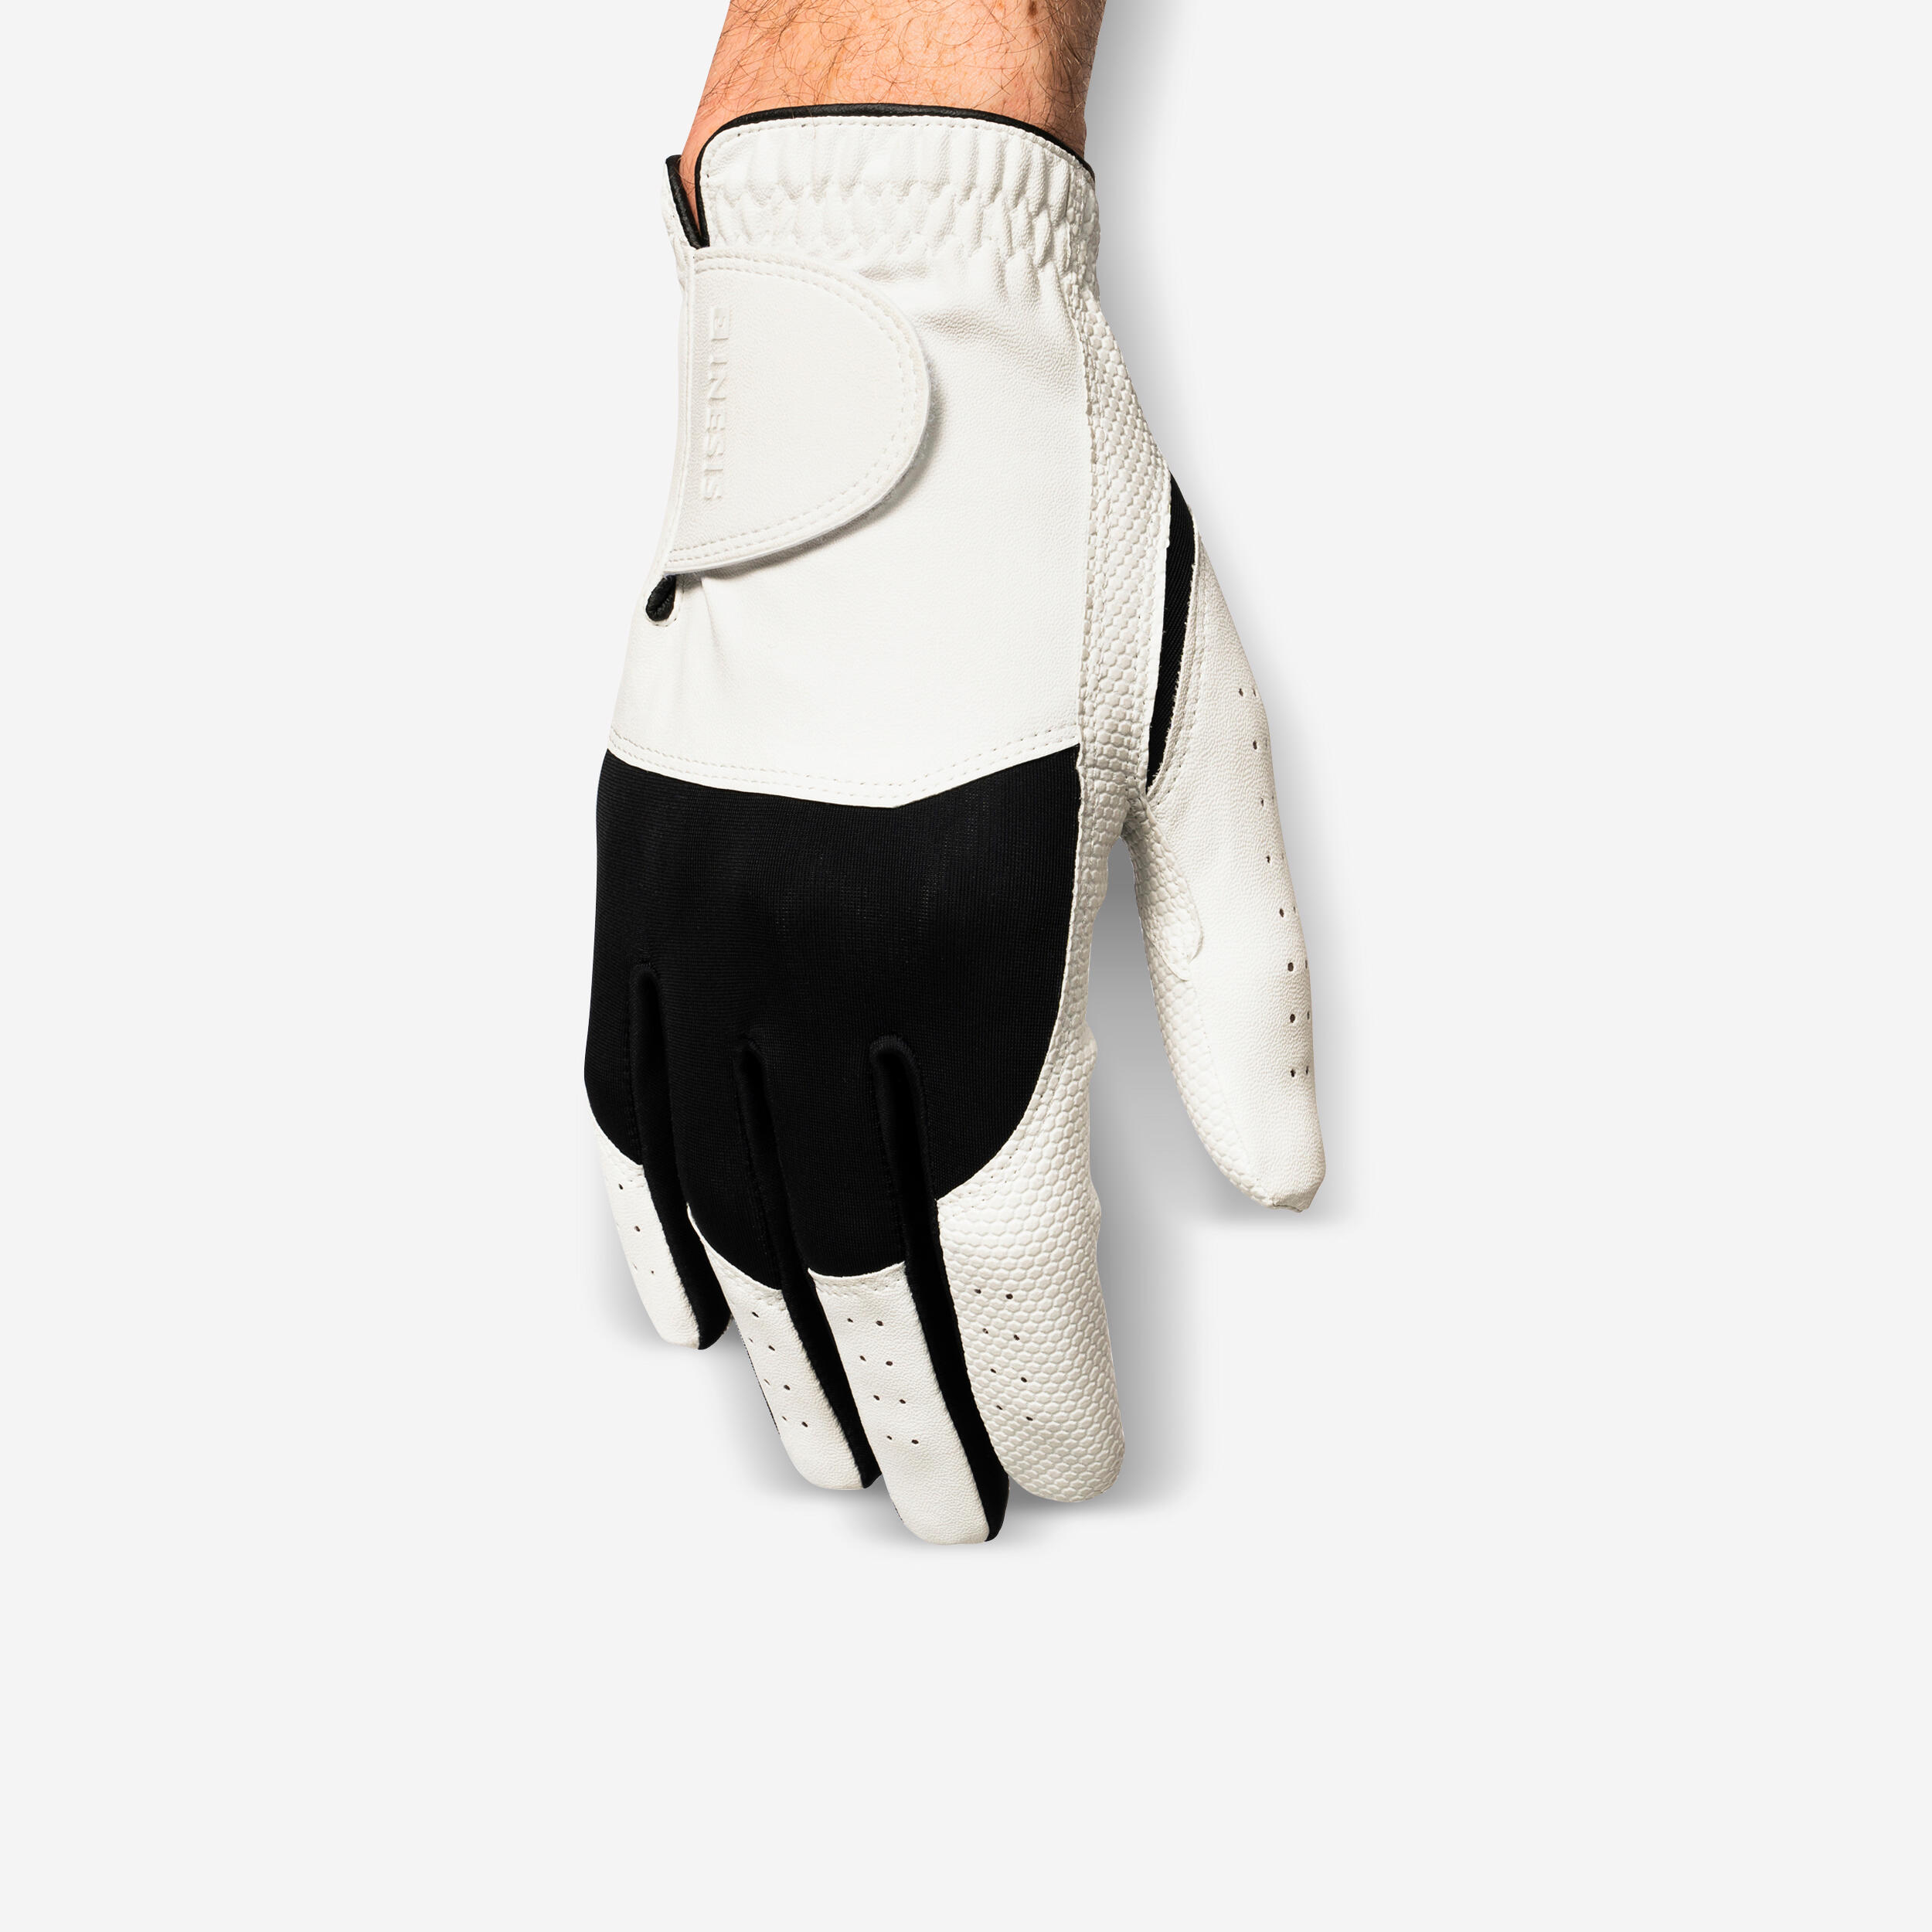 Men’s LH Golf Glove